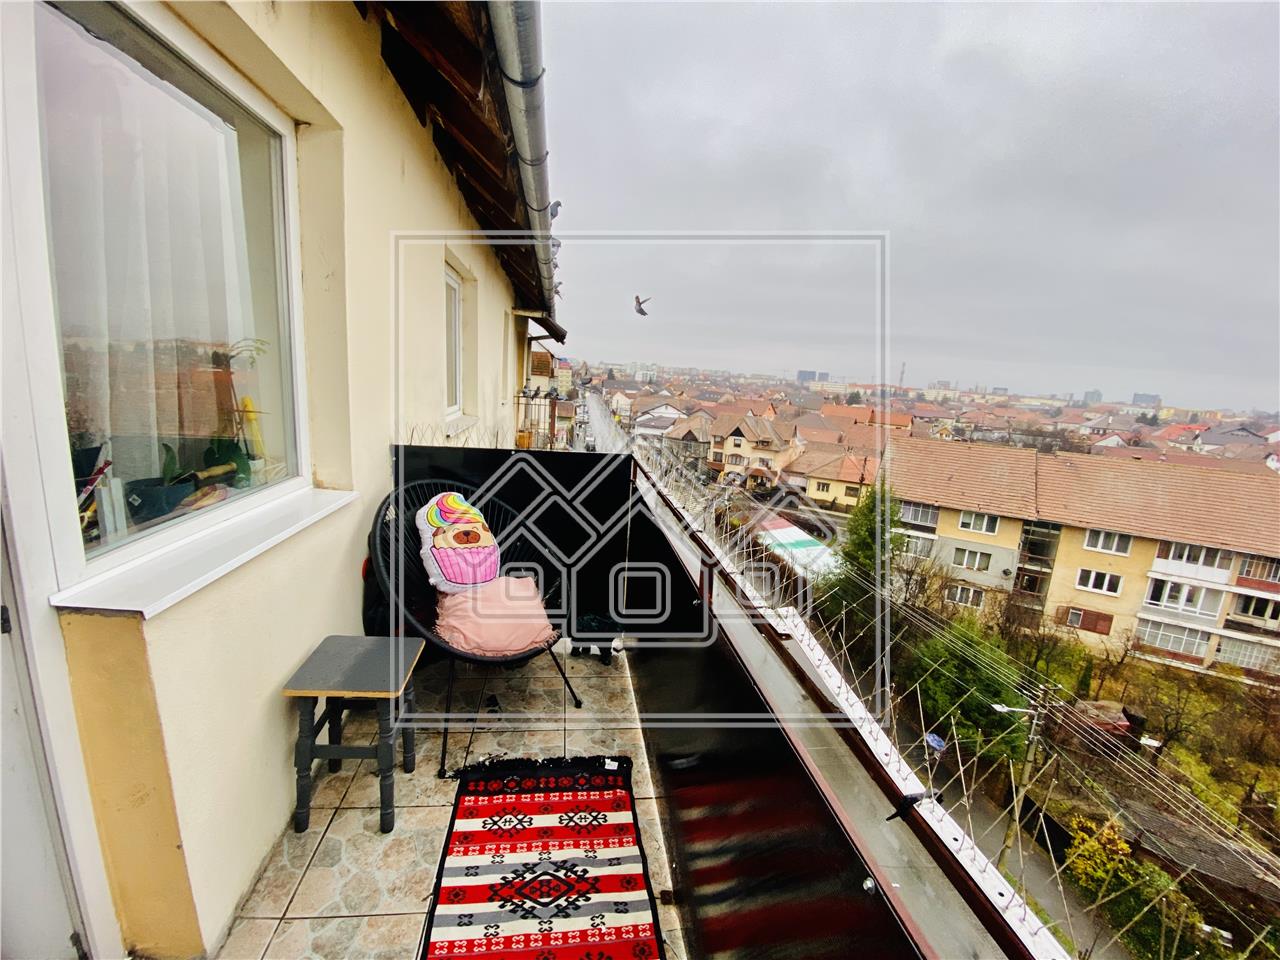 Apartament de vanzare in Sibiu -  3 camere, balcon - Vasile Aaron